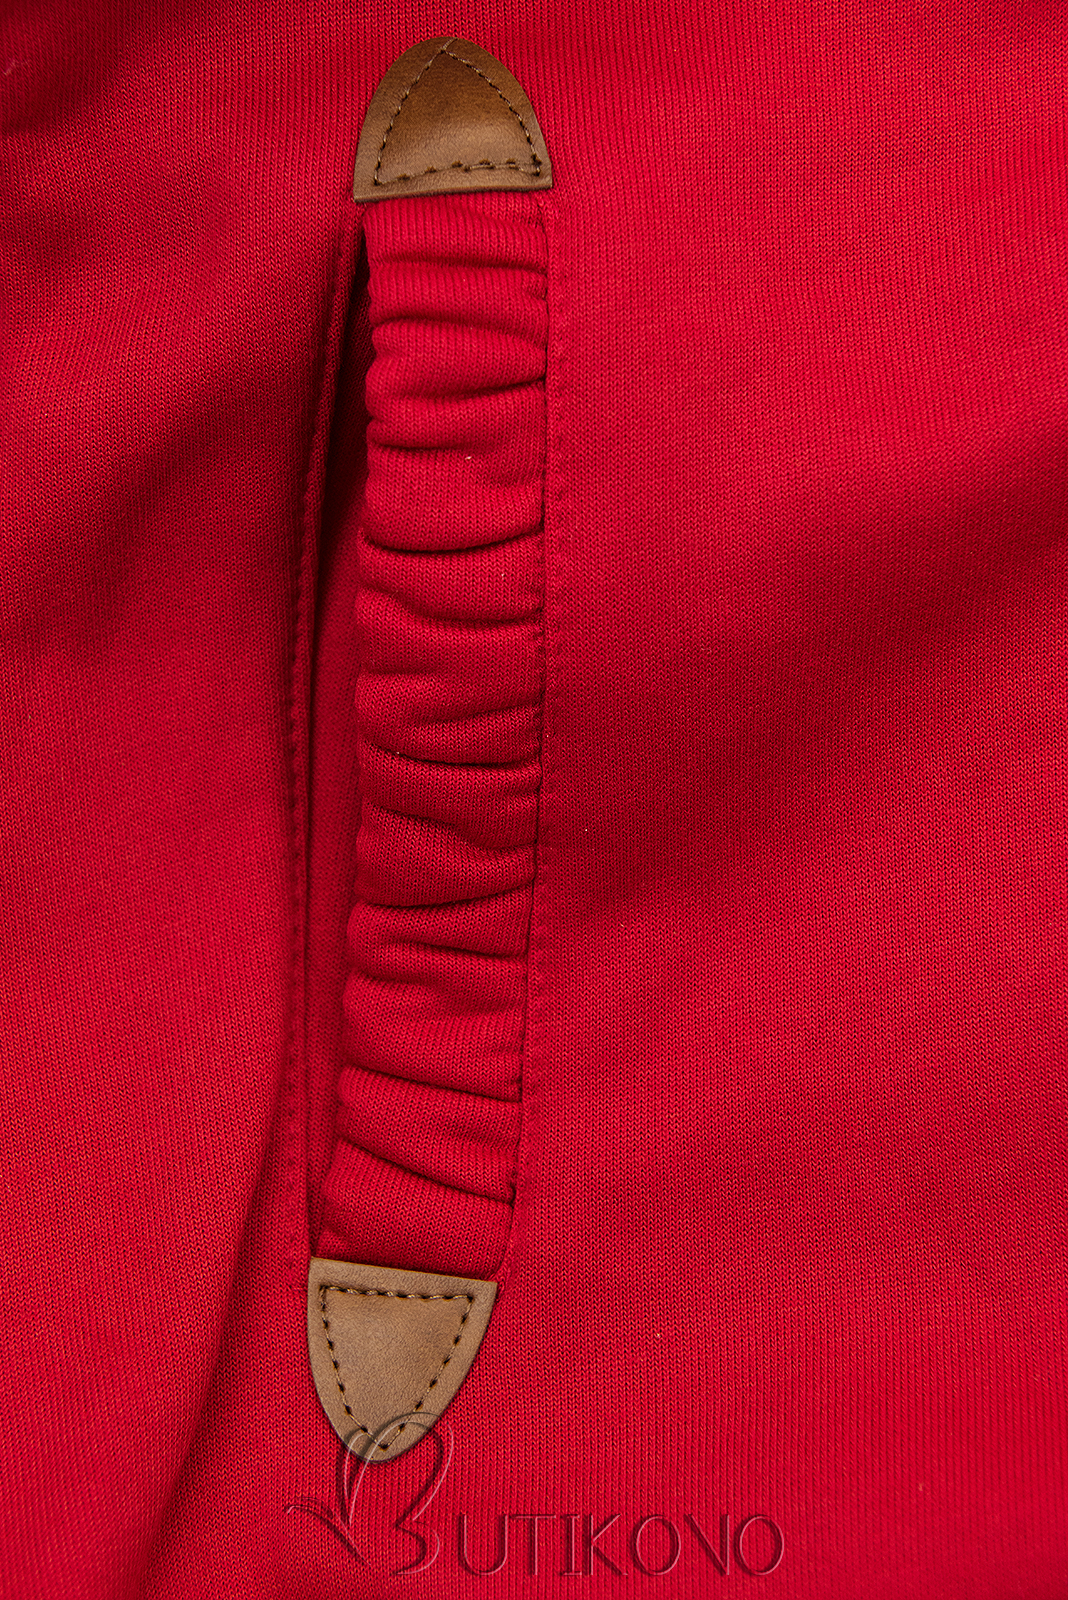 Červená mikina s barevnou podšívkou v kapuci